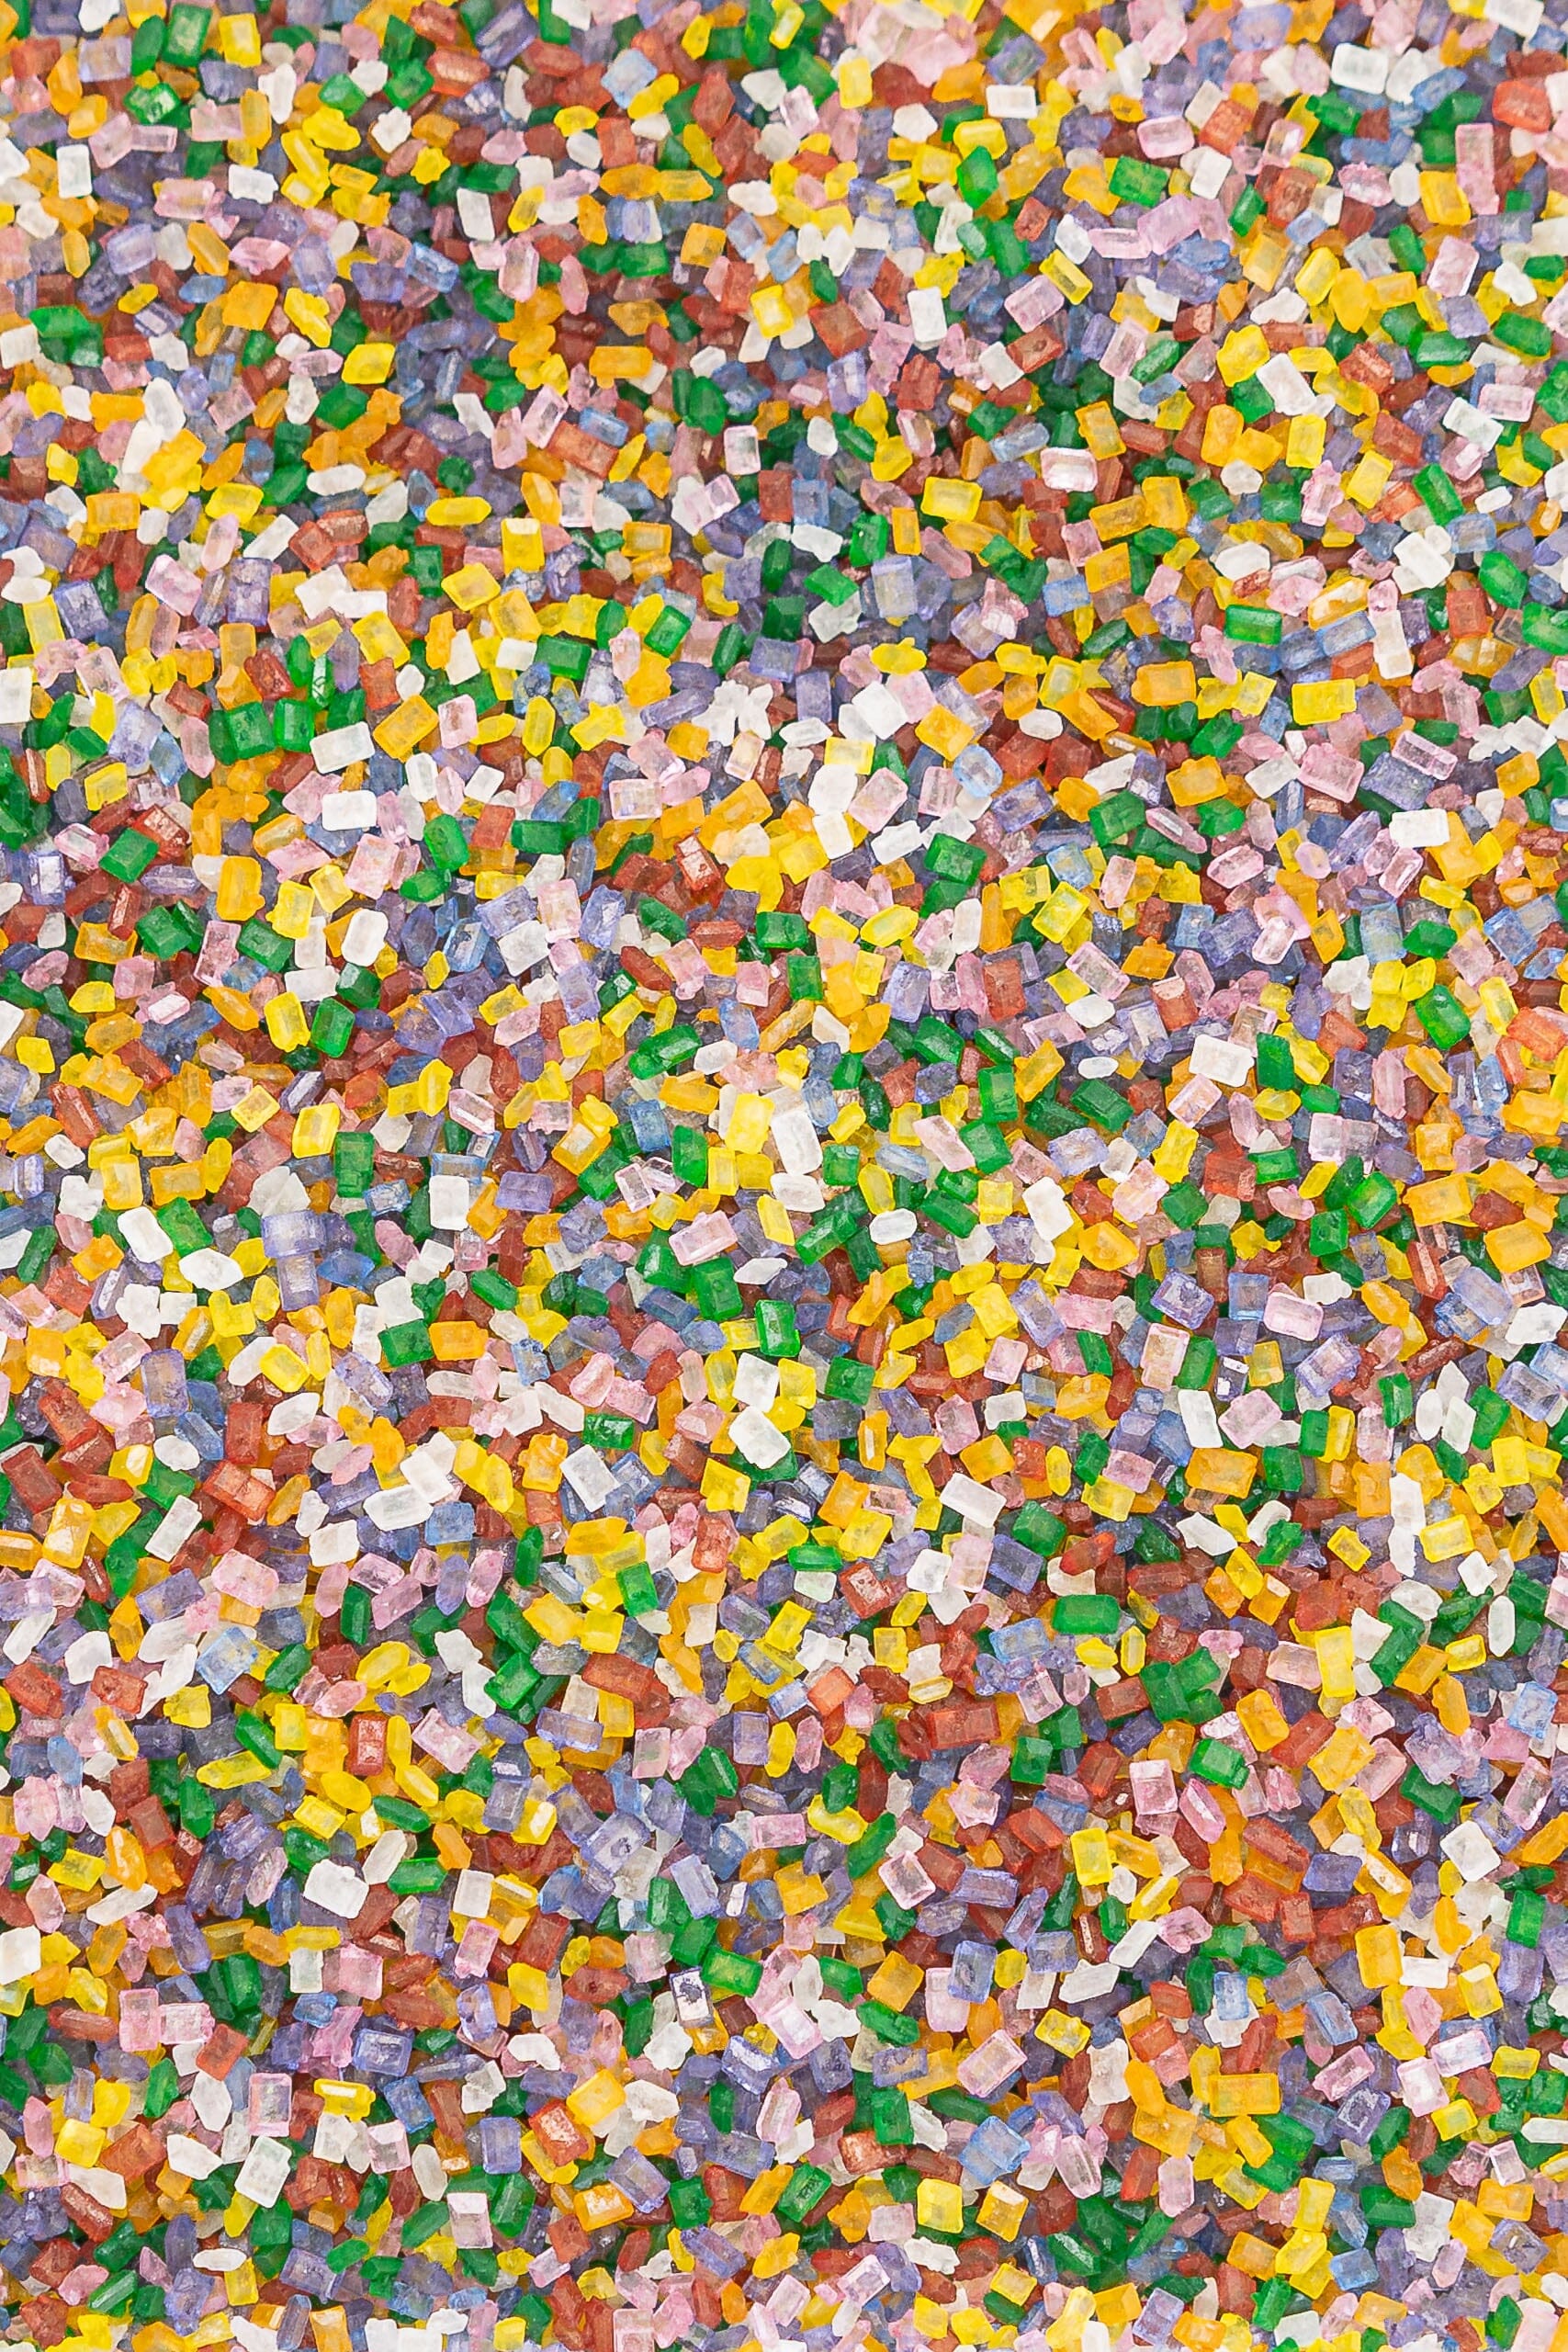 Sugar Crystals - Rainbow Sprinkles Sprinkly 